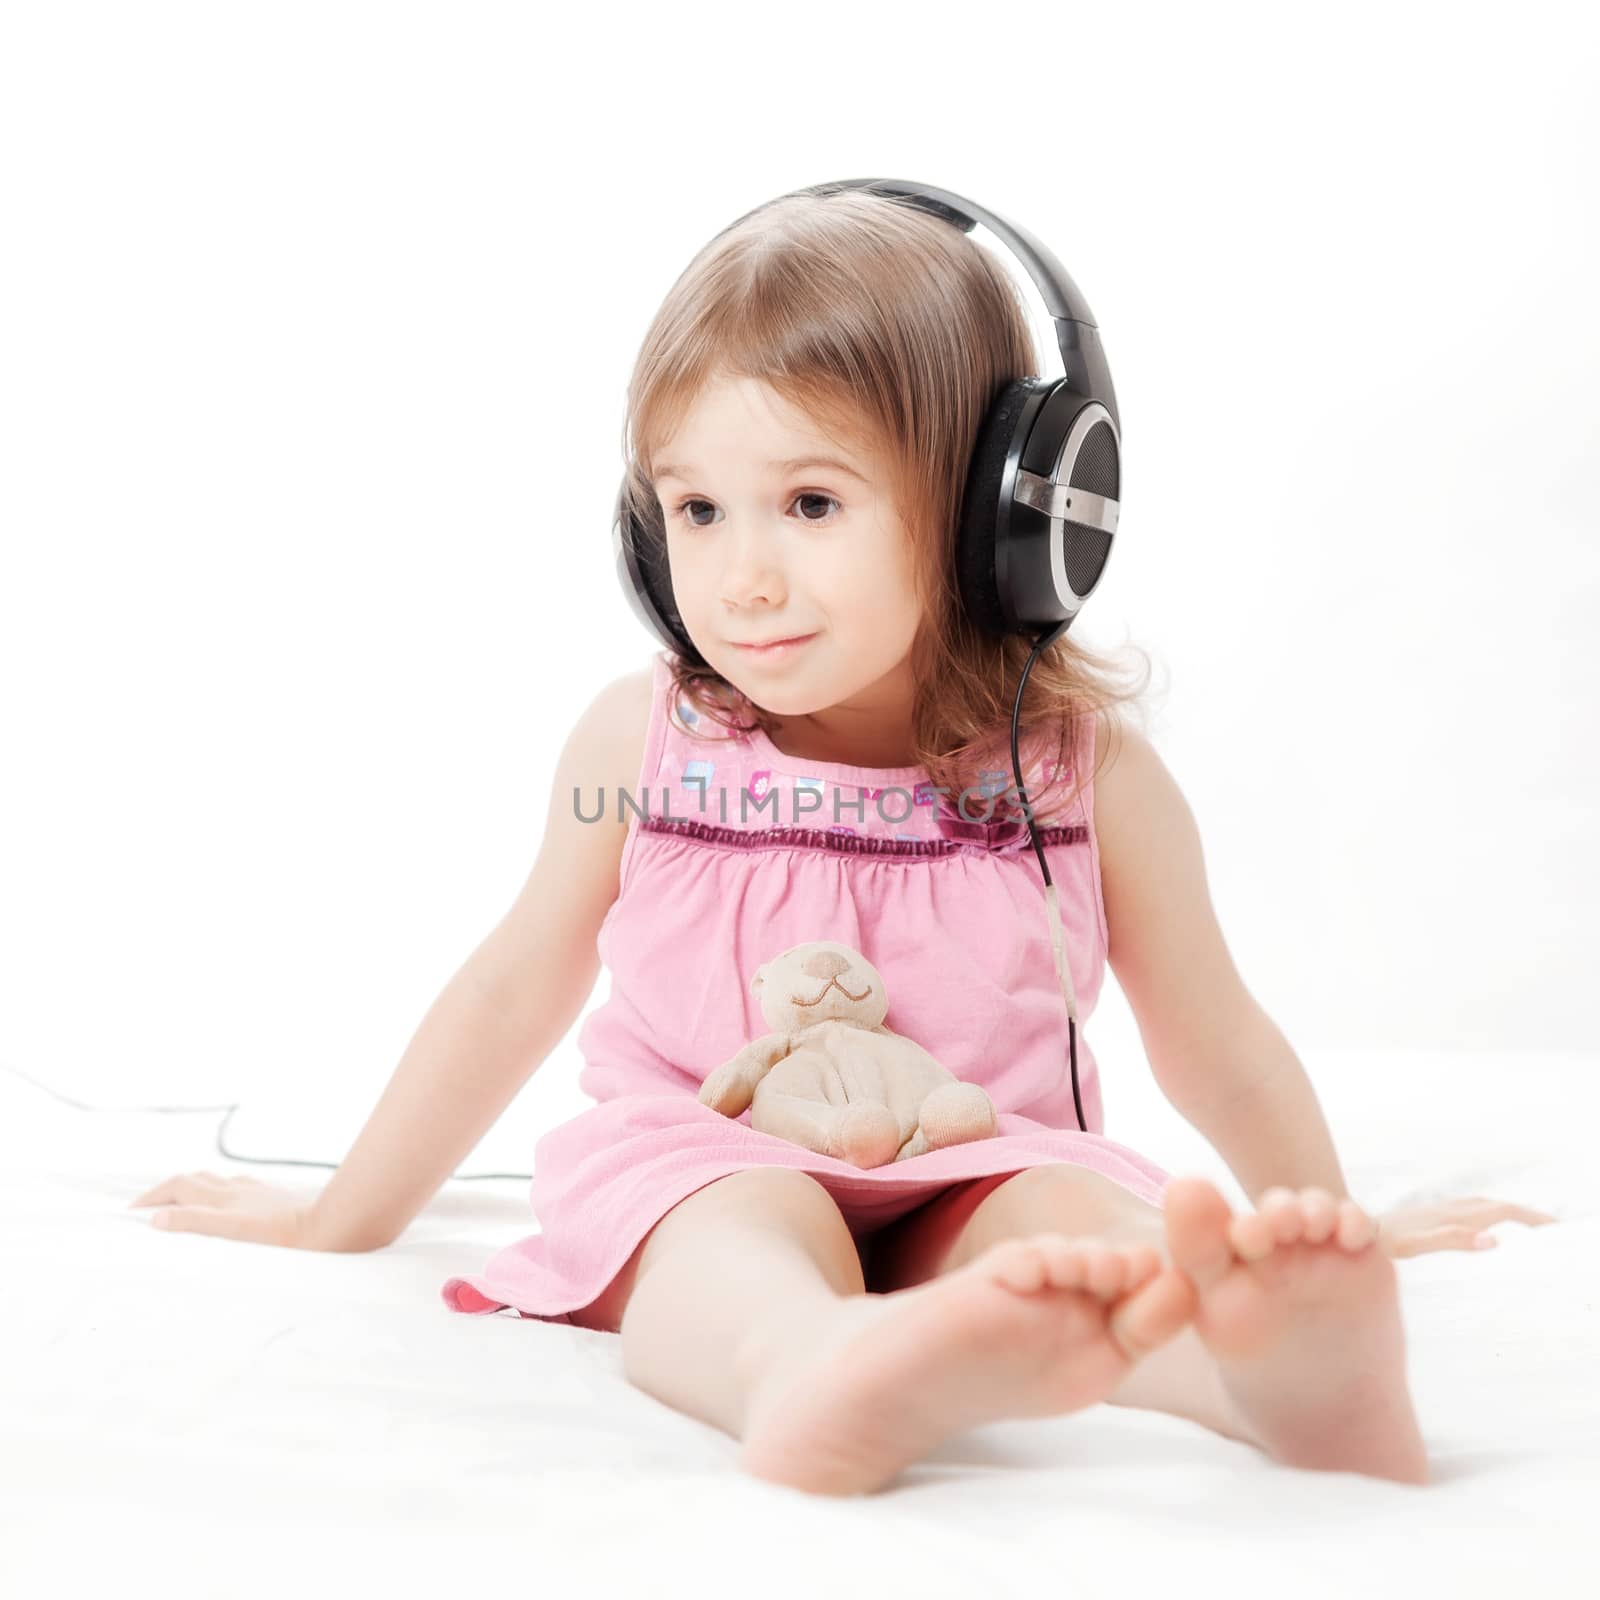 the little girl listens to music by sveter